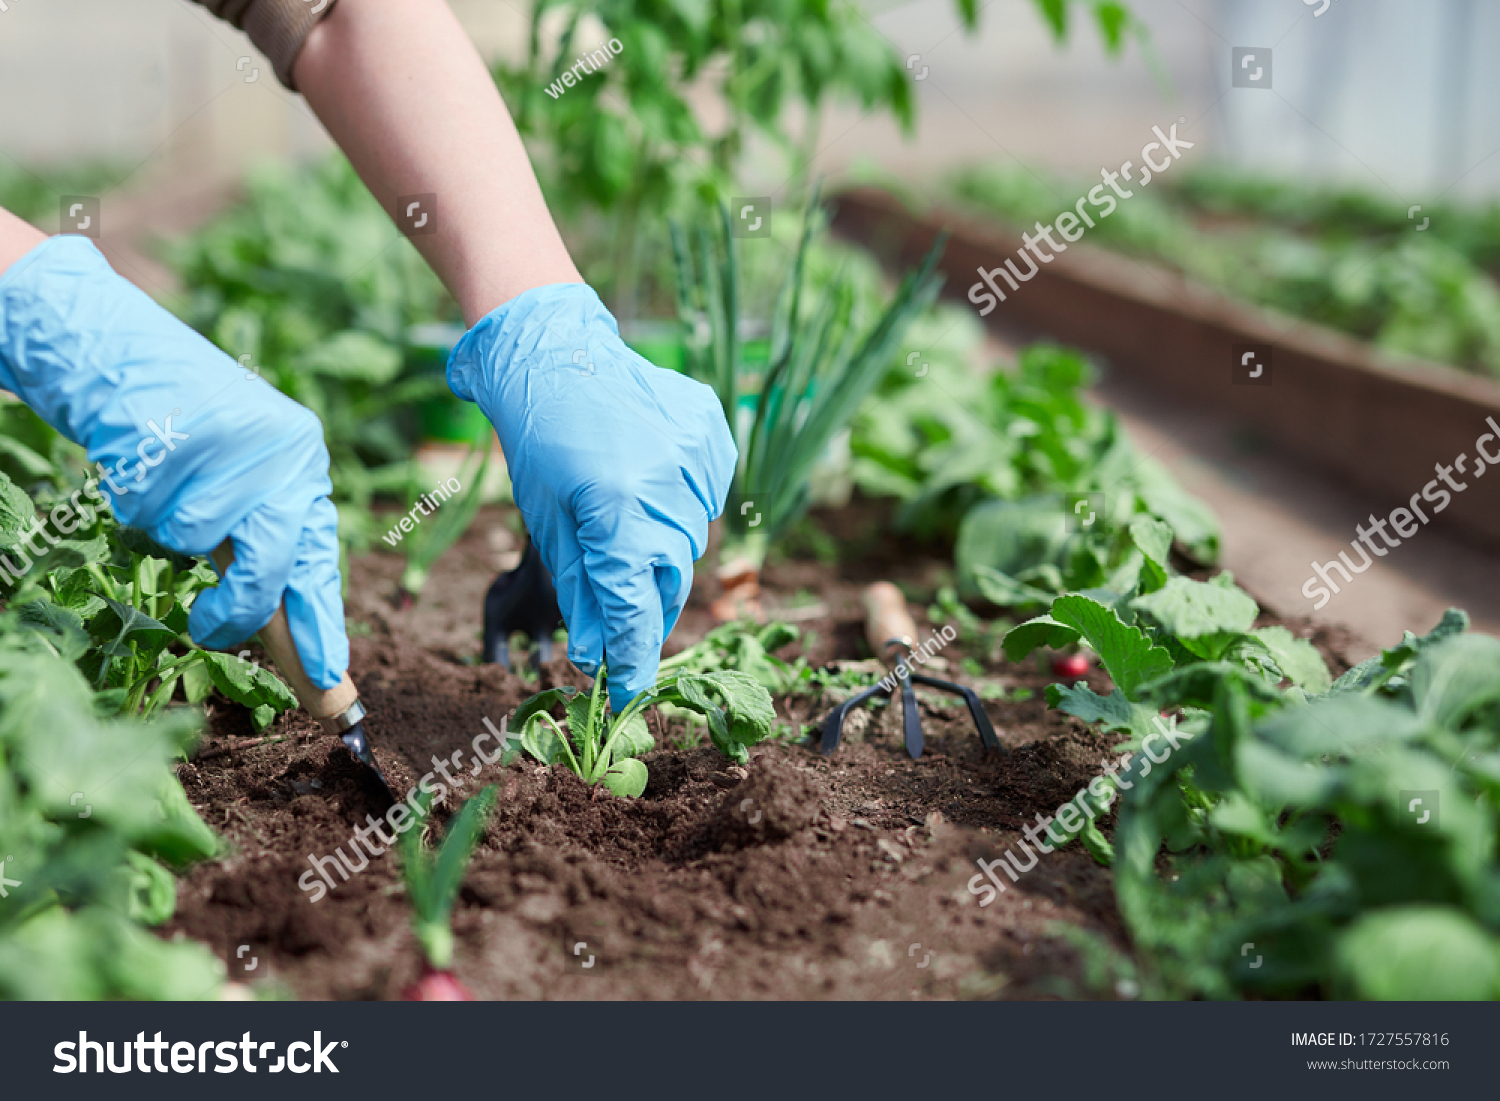 Gardeners hands planting and picking vegetable from backyard garden. Gardener in gloves prepares the soil for seedling. #1727557816